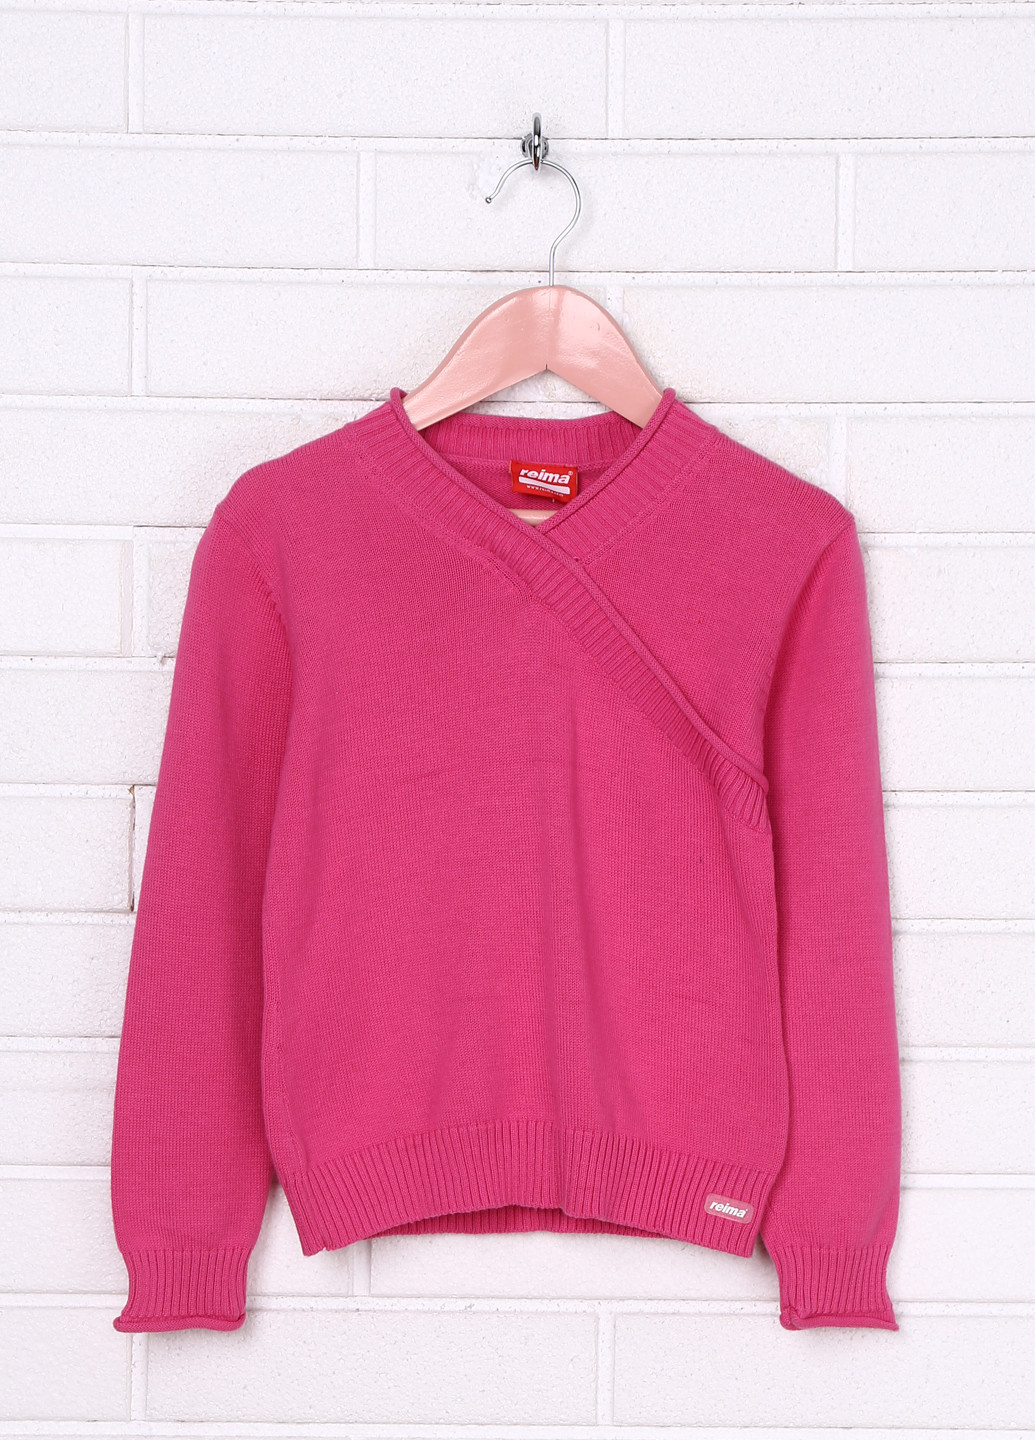 Розовый демисезонный пуловер пуловер Reima